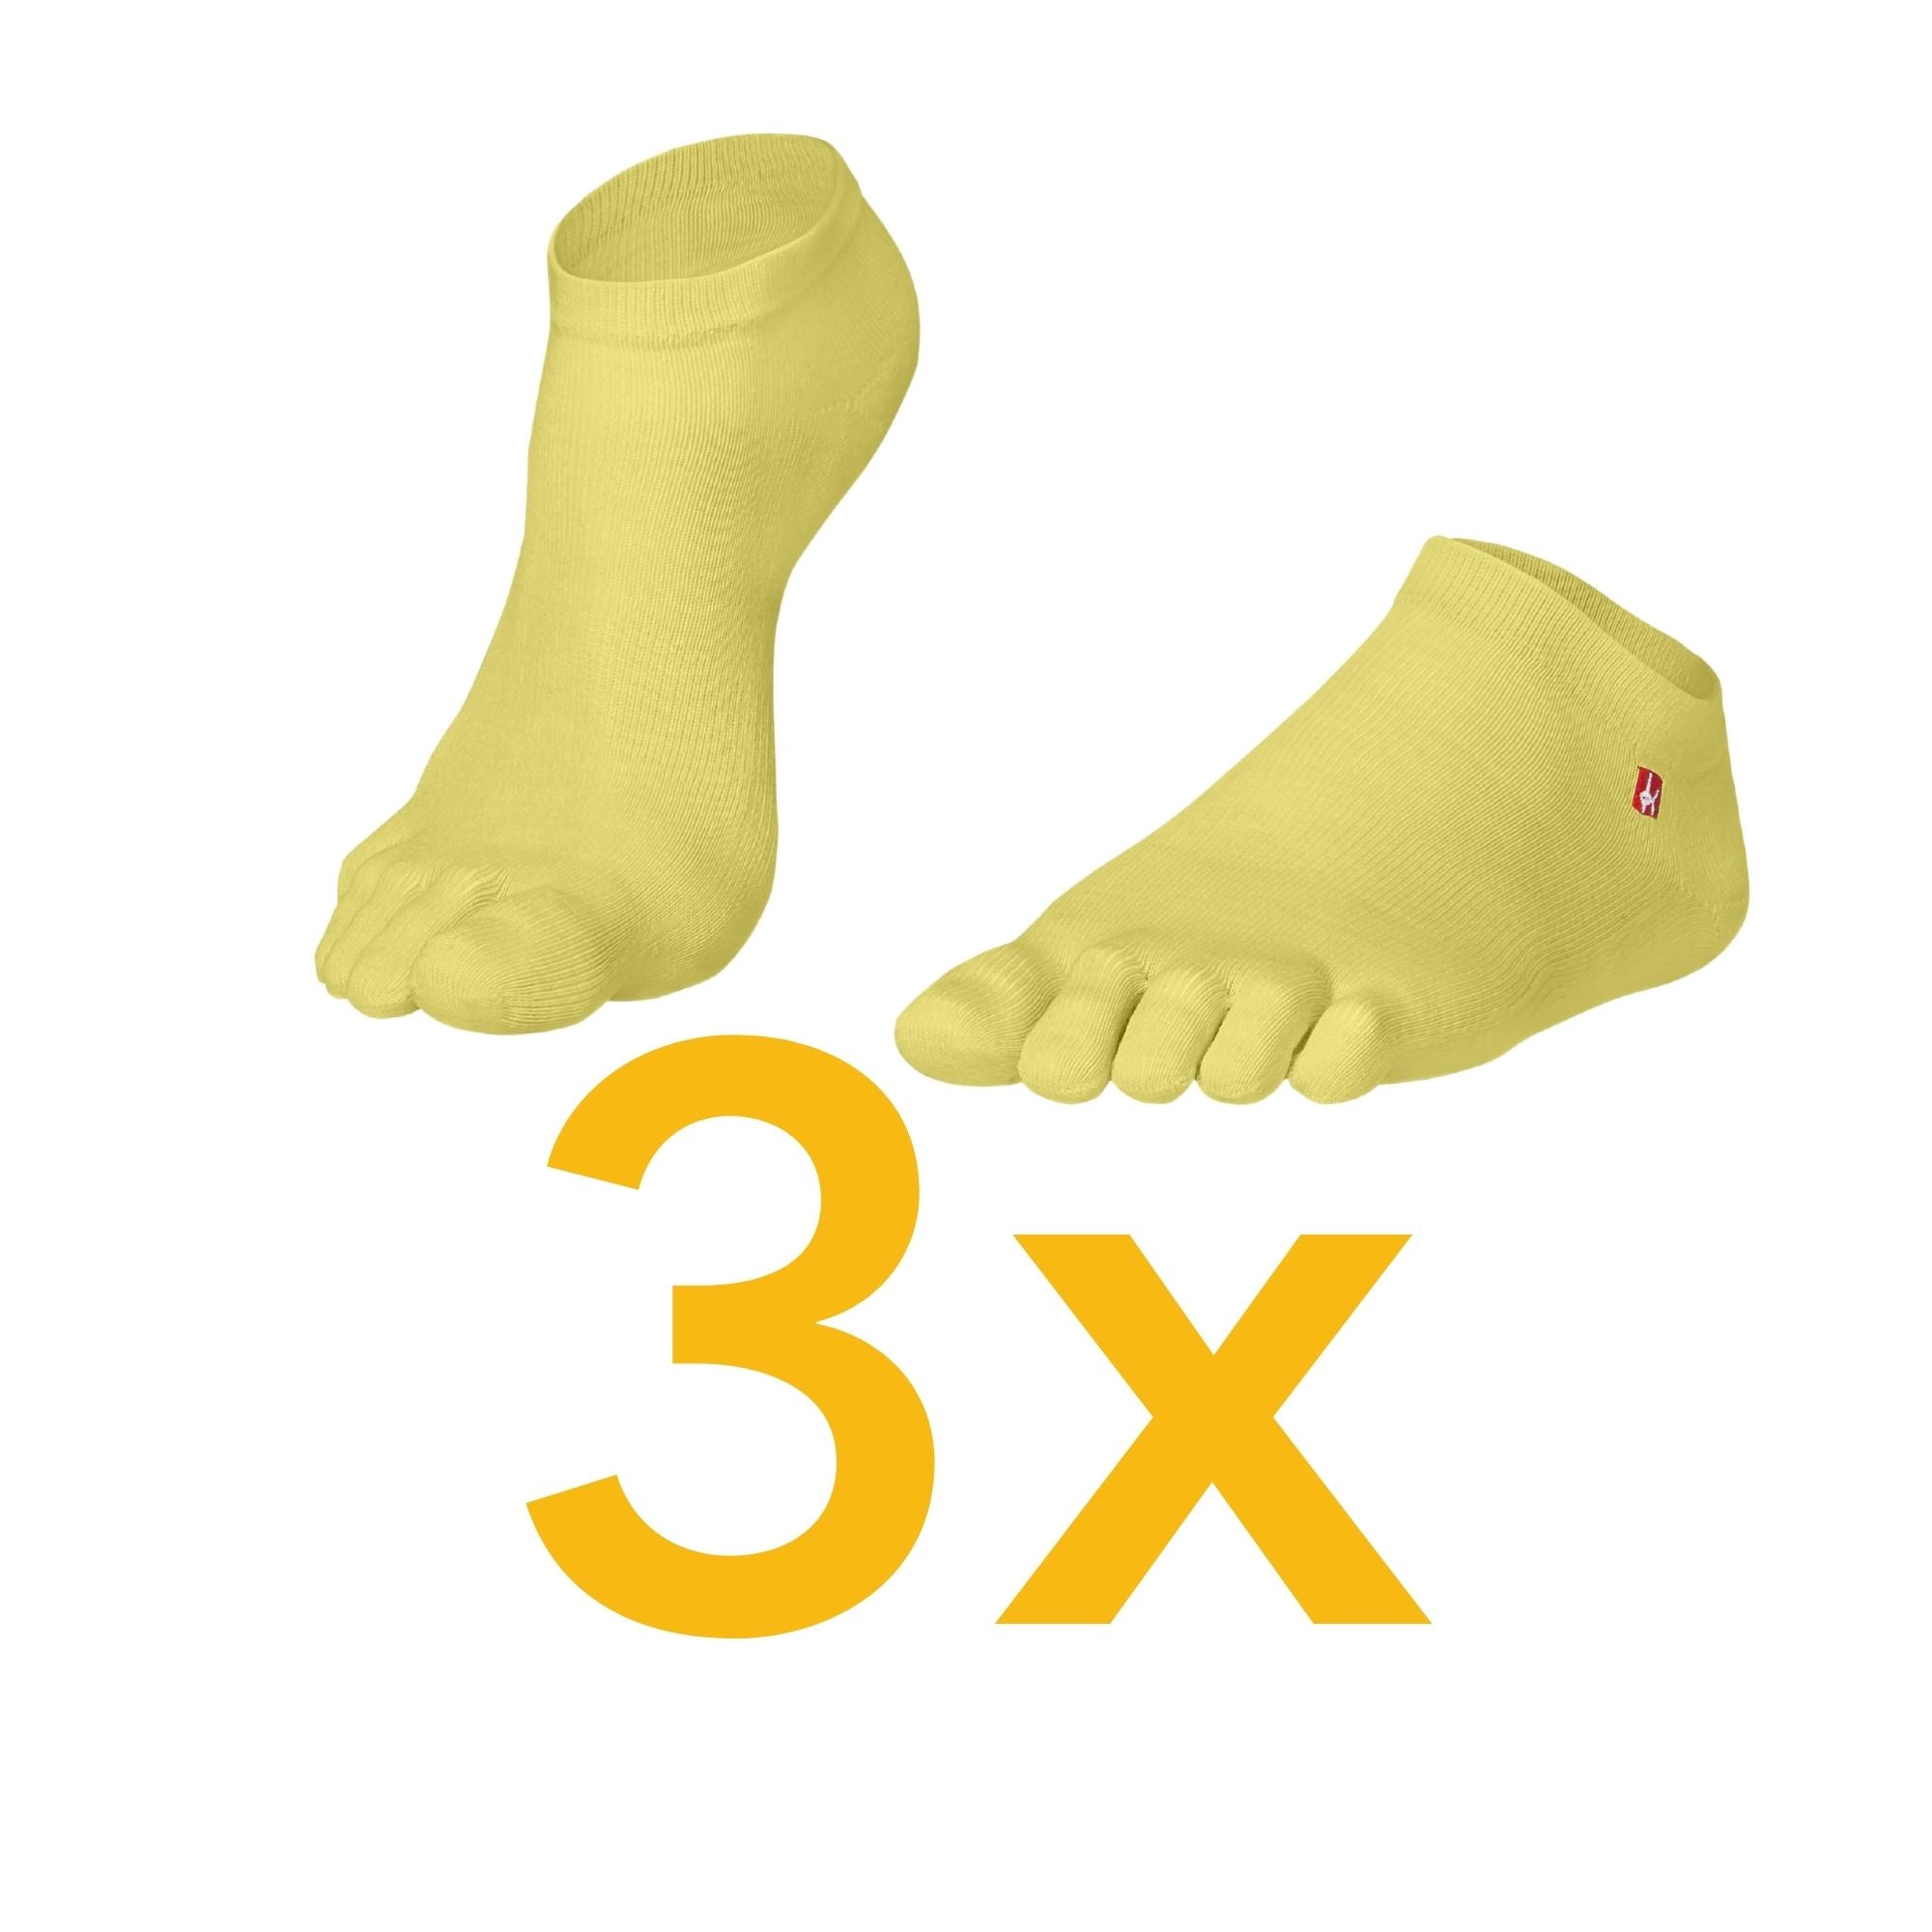 Paquete de 3 calcetines deportivos de Coolmax y algodón de Knitido en amarillo